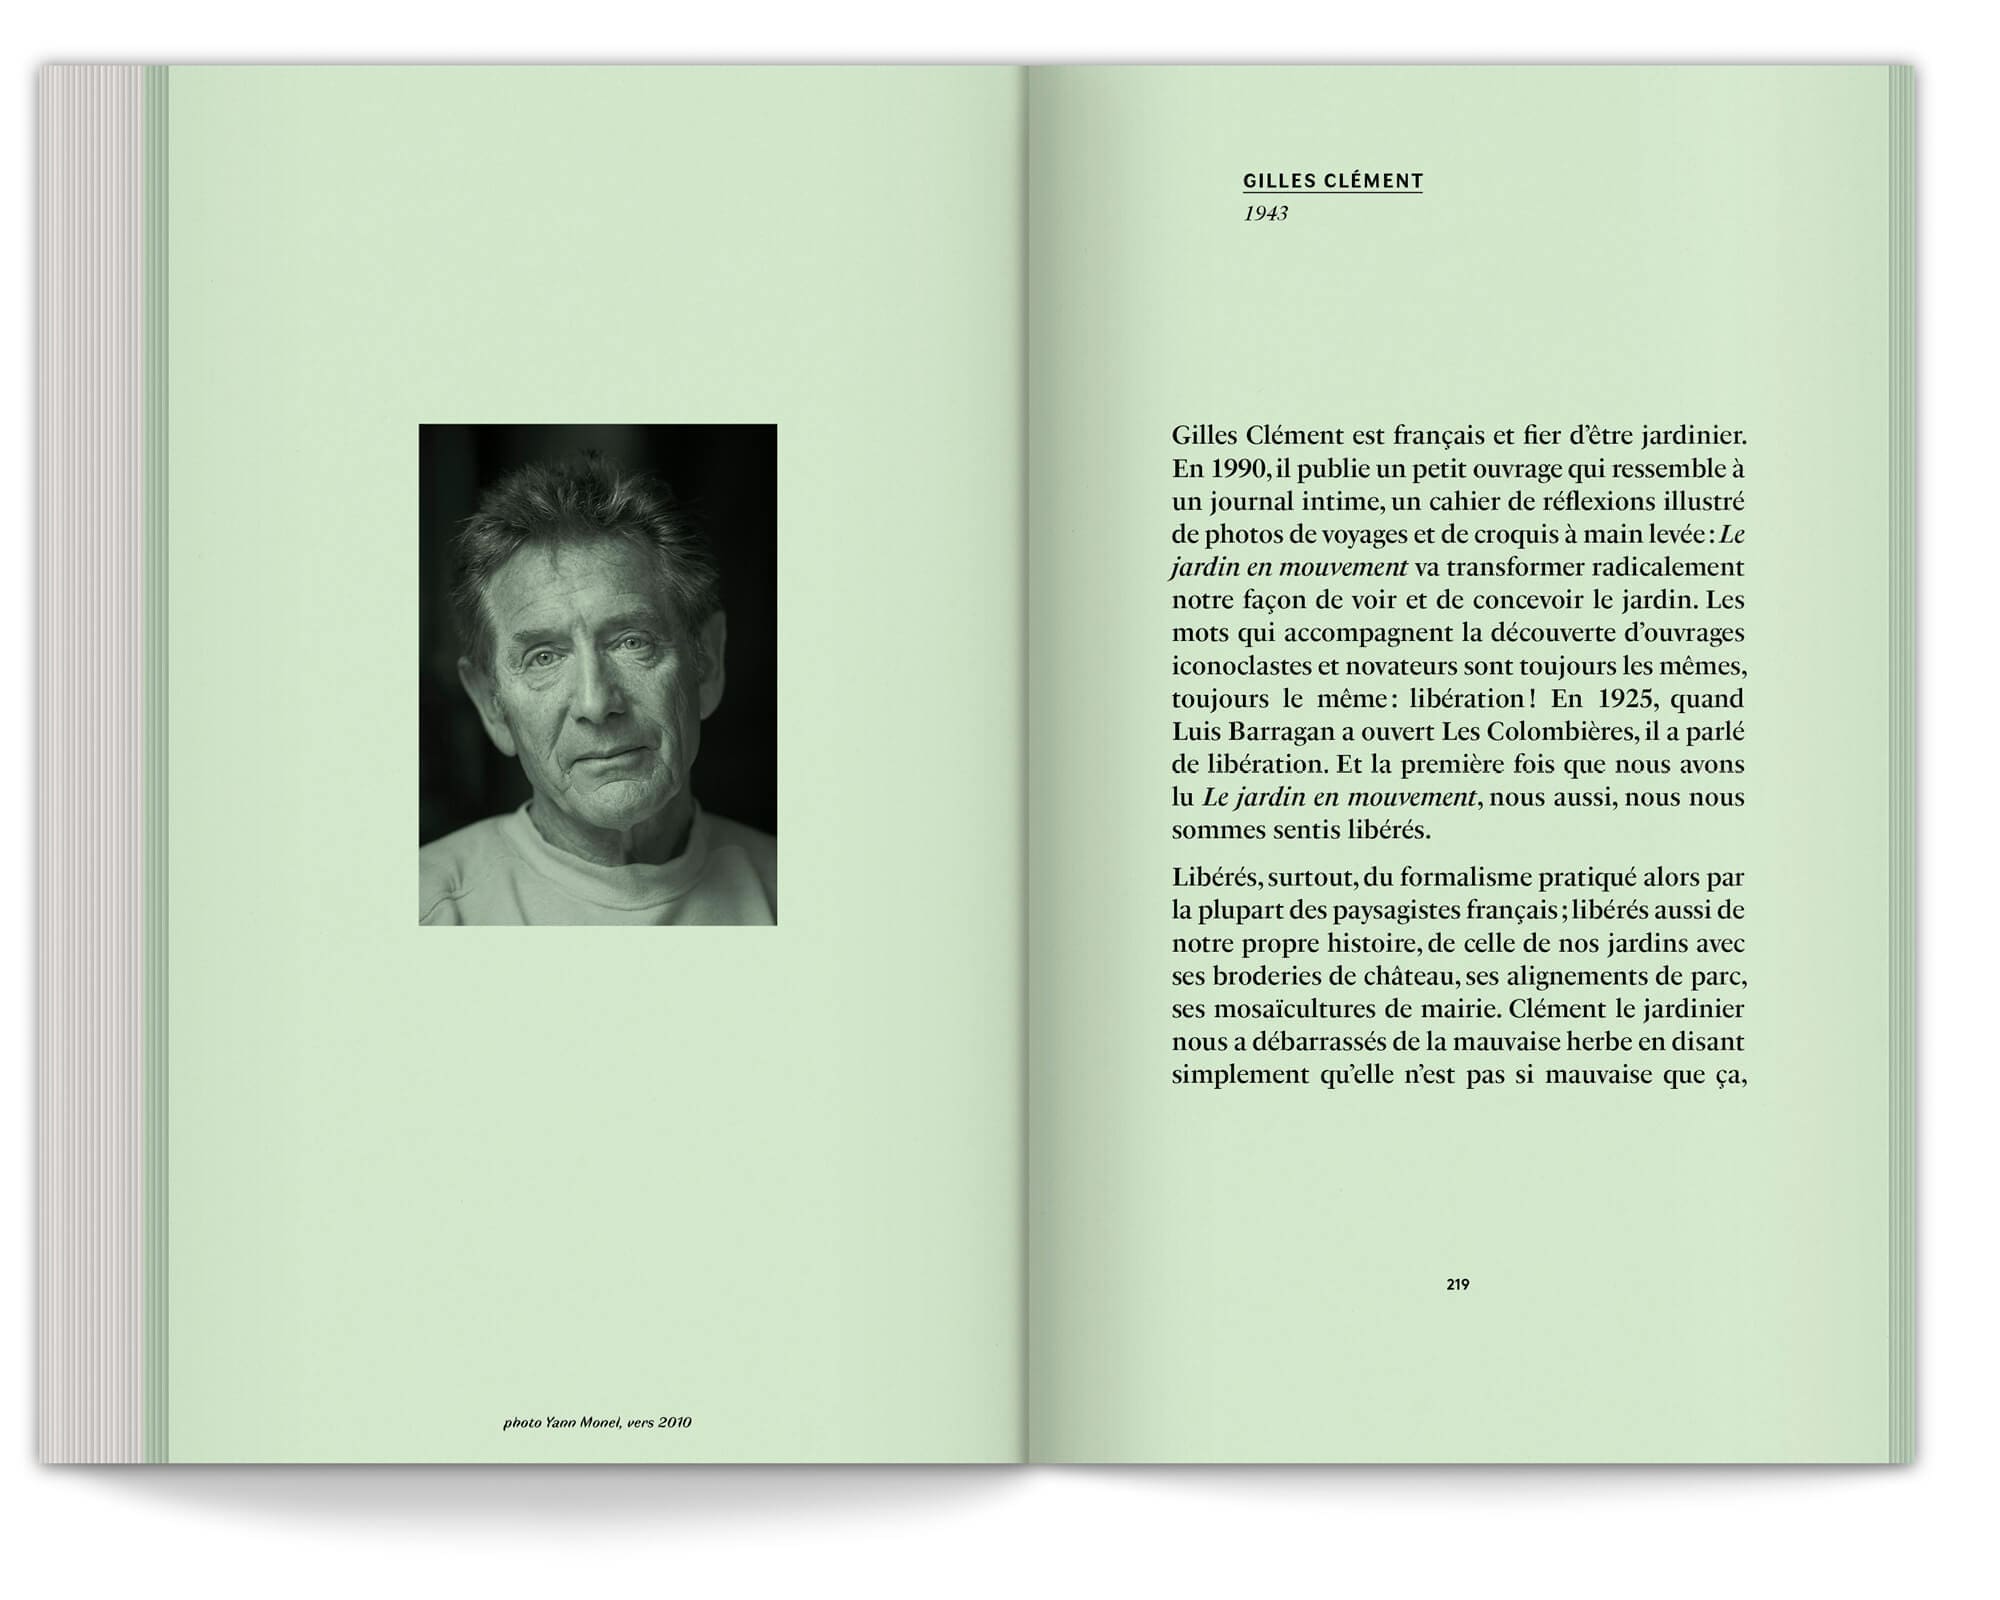 Gilles Clément dans les annexes du manifeste du jardin émotionnel, qui signe la préface du livre d'Ossart et Maurières, design graphique Ichetkar